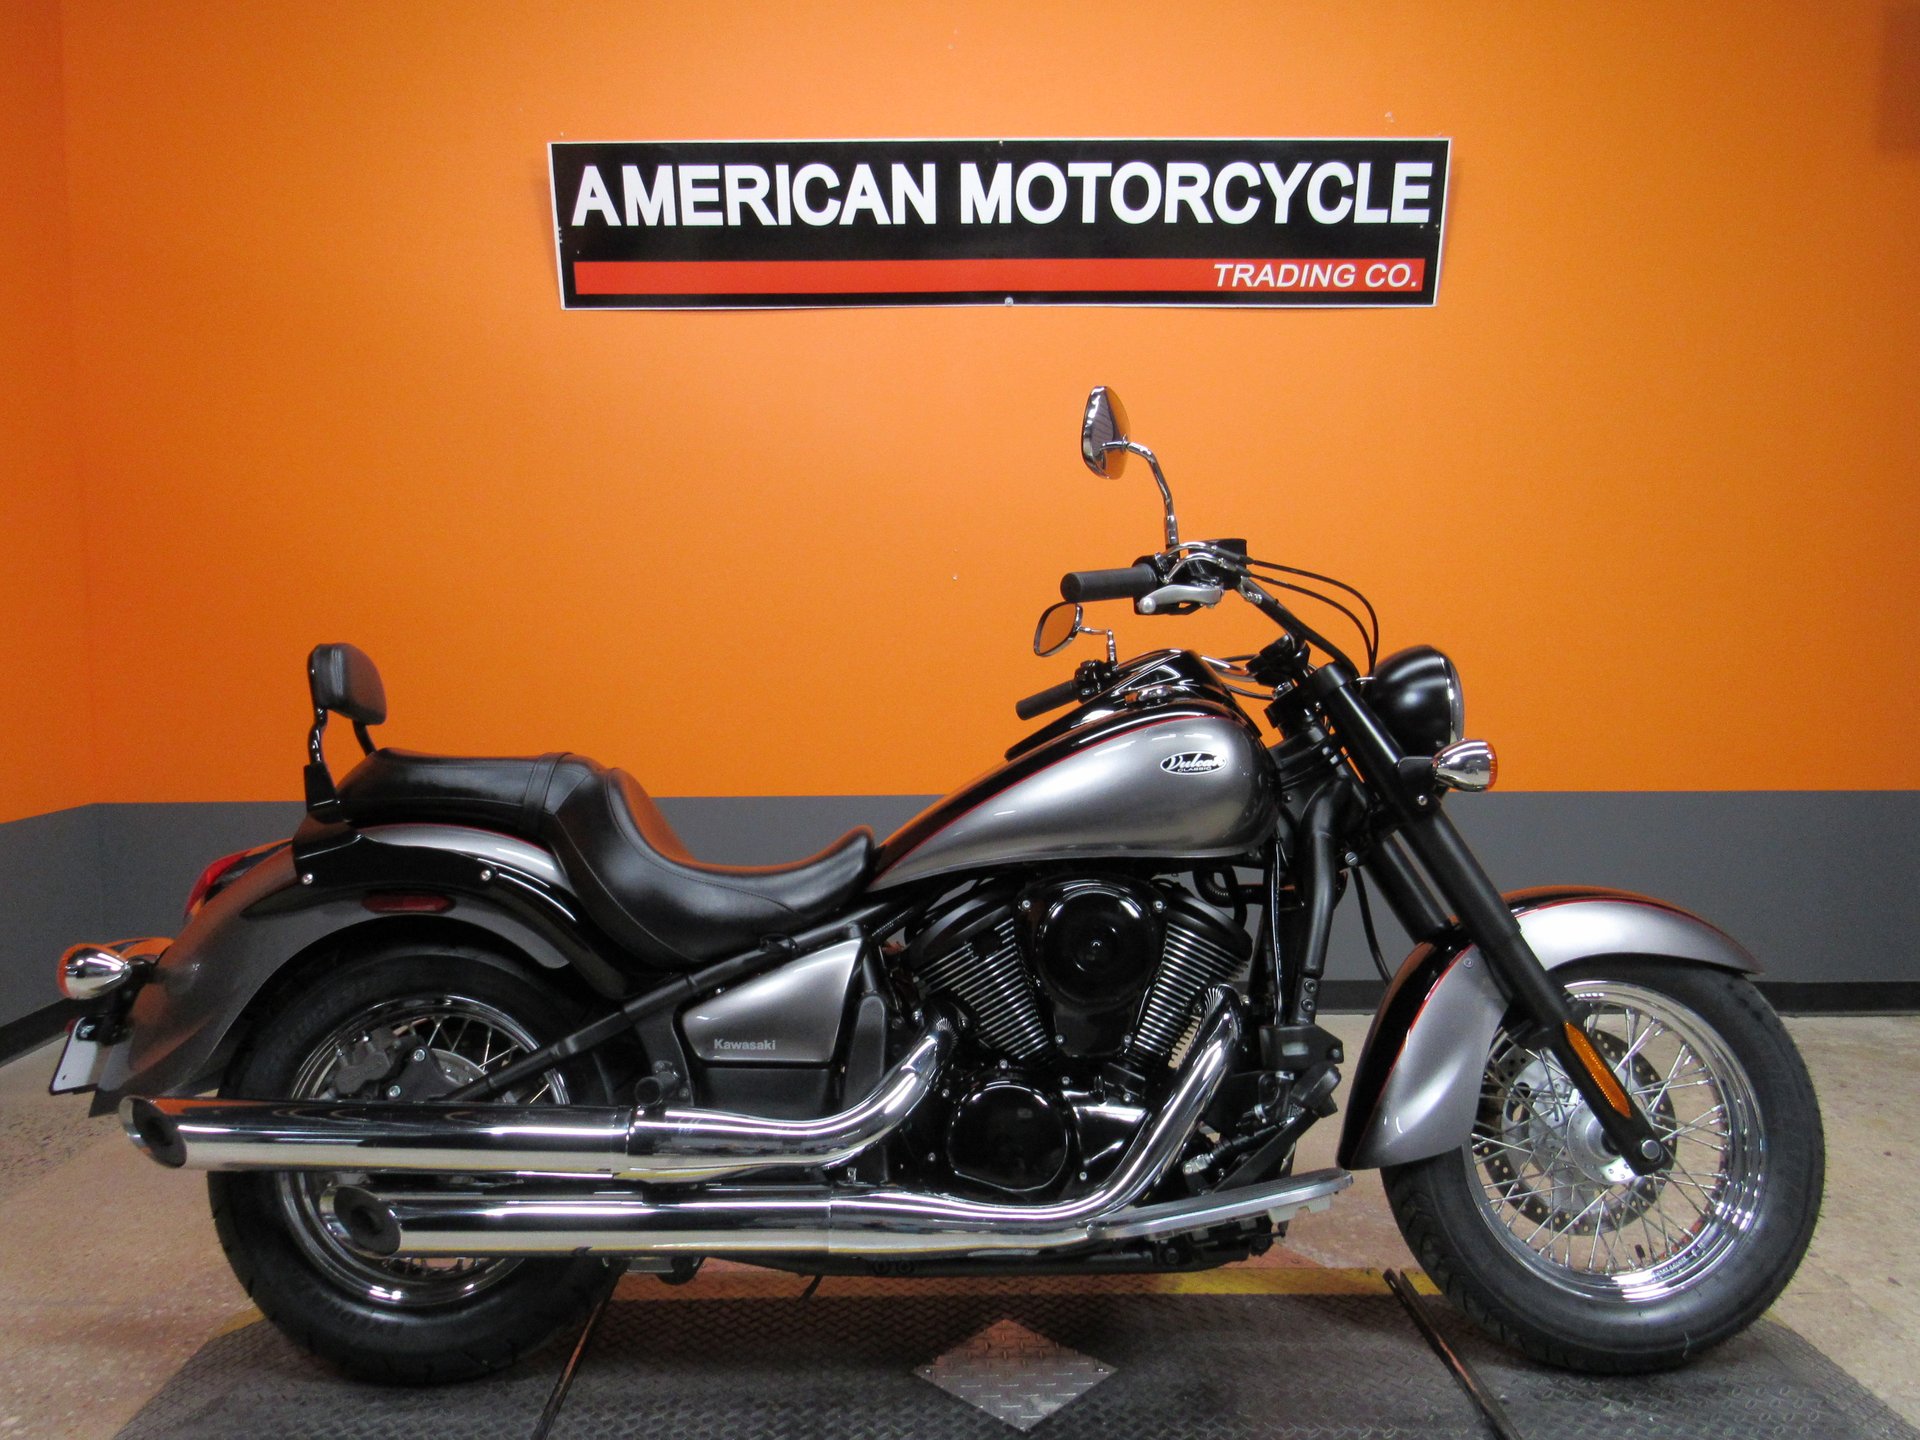 2014 Kawasaki Vulcan Classic | Trading Company - Used Harley Davidson